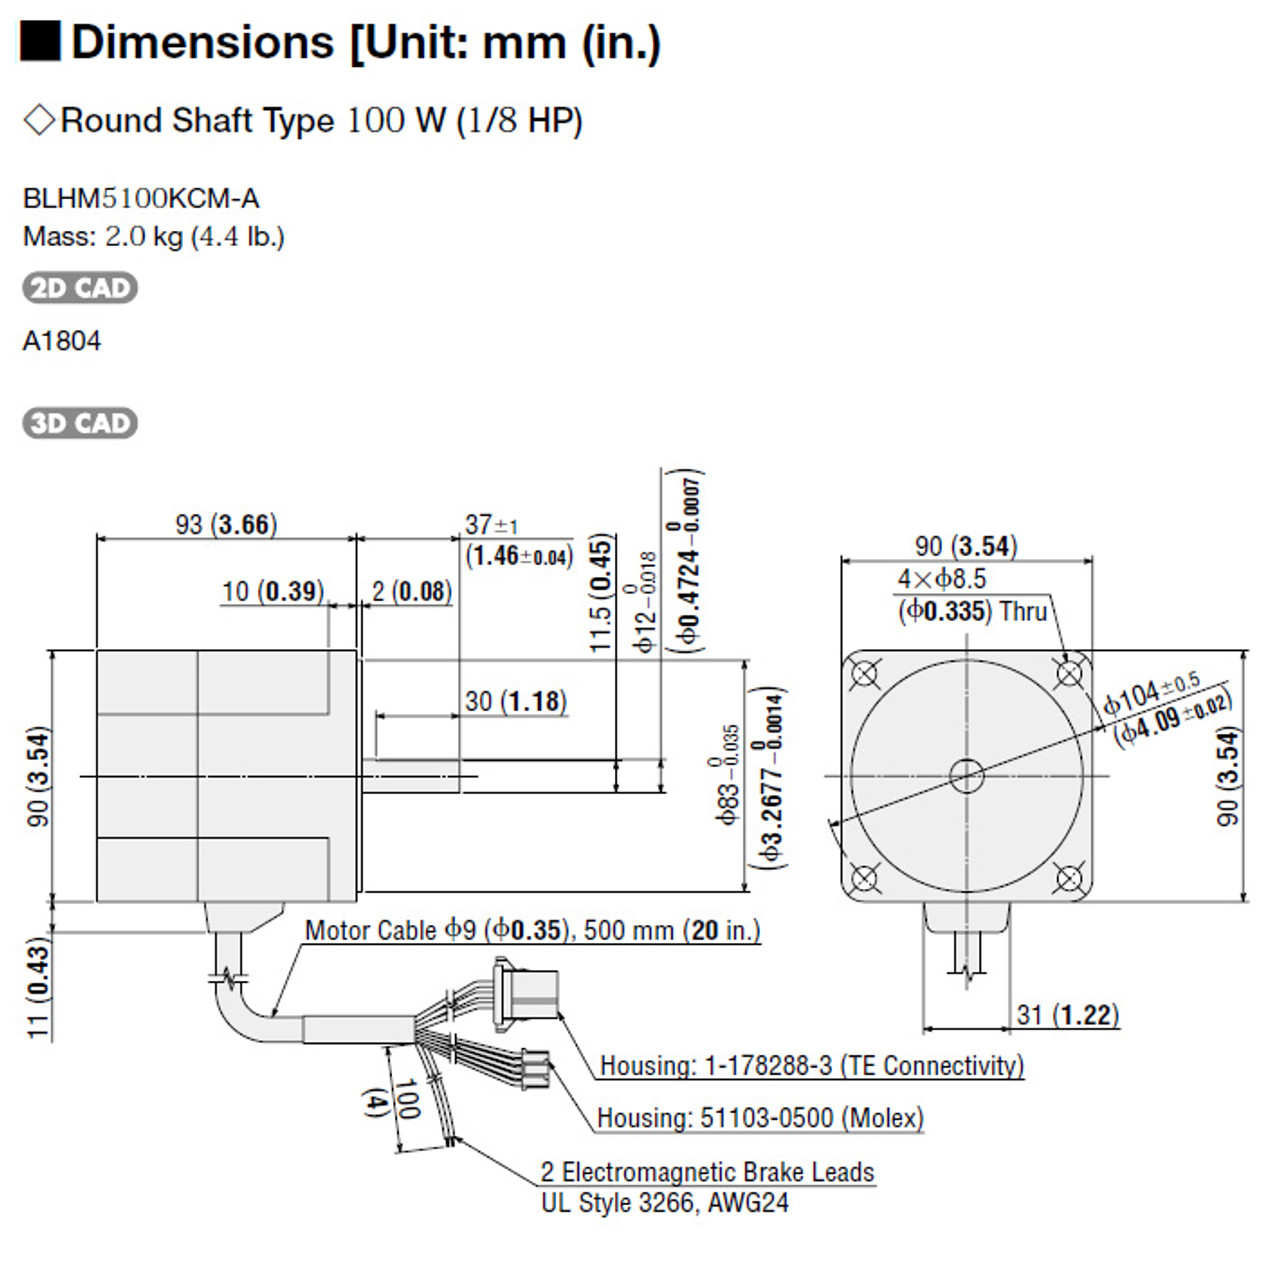 BLHM5100KCM-A / BLHD100K - Dimensions